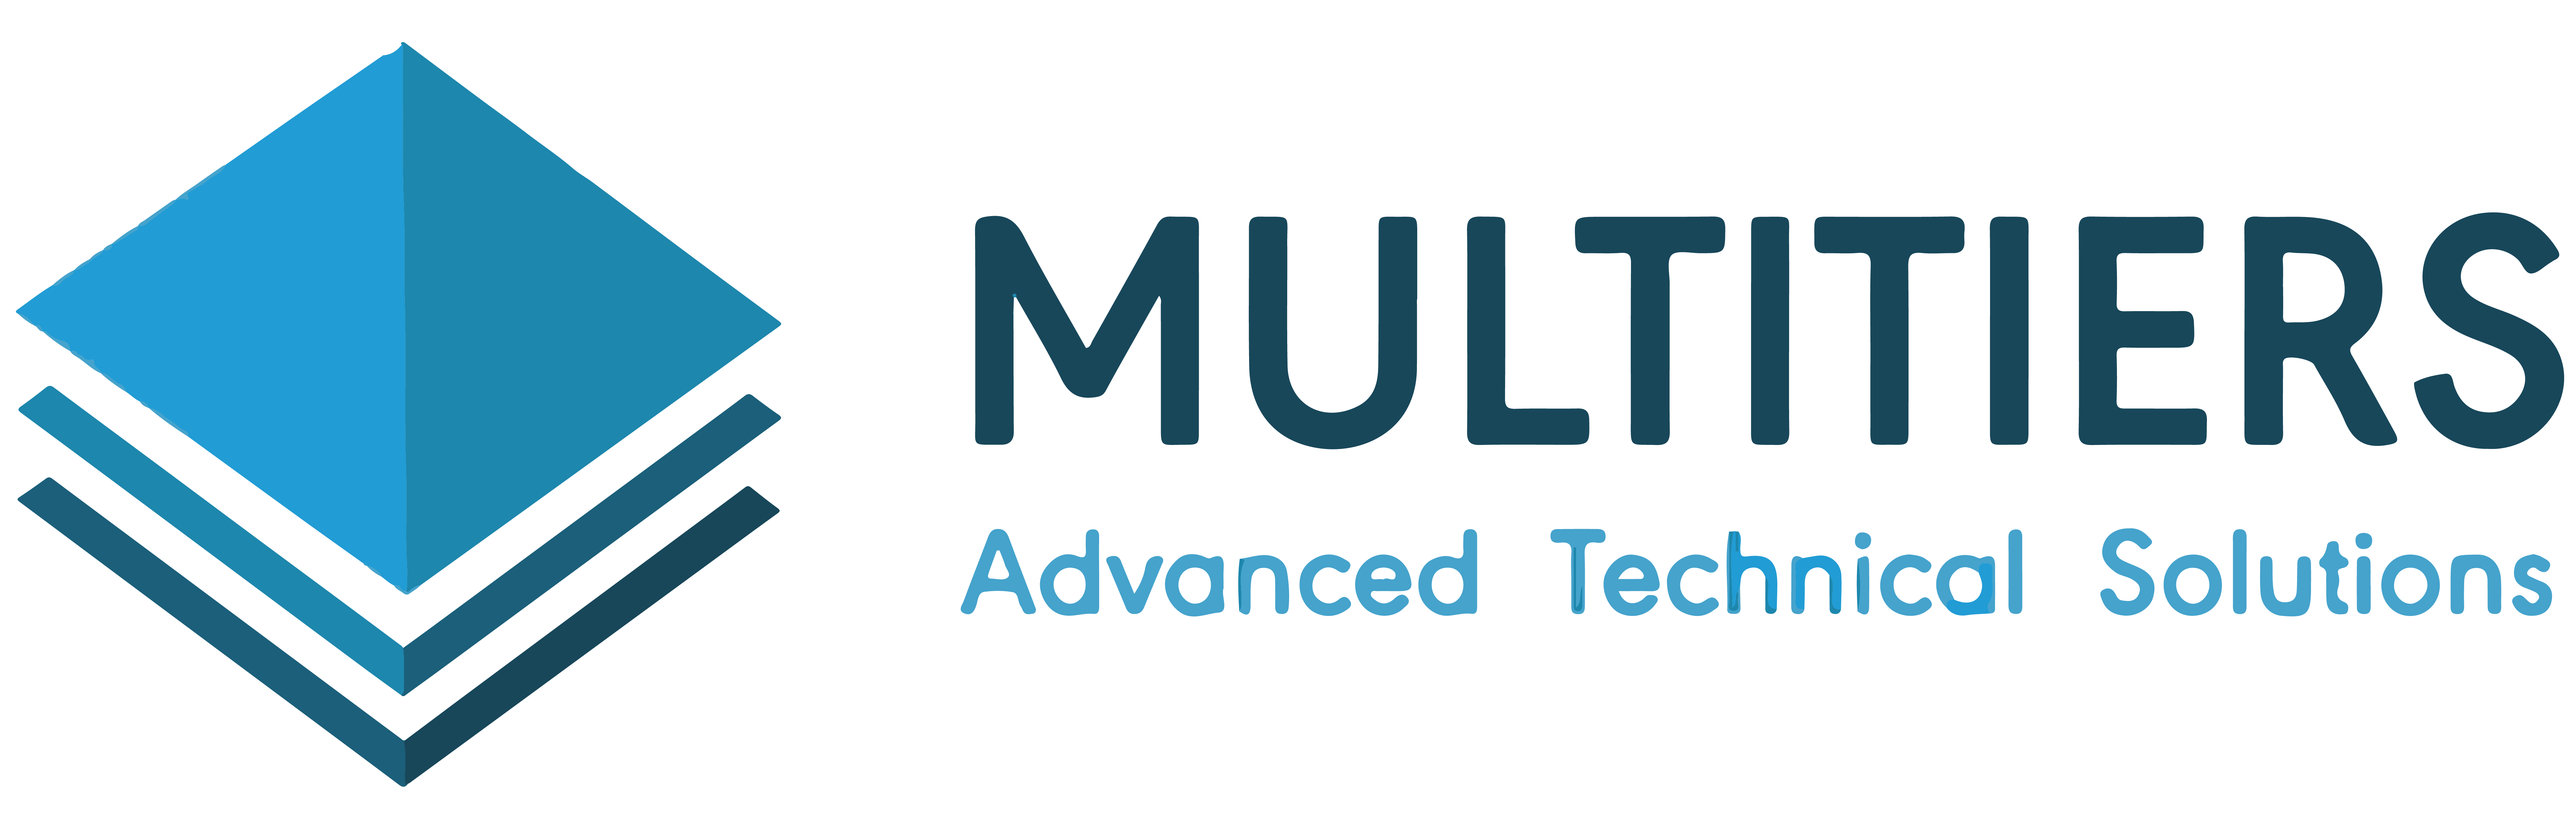 Multitiers logo